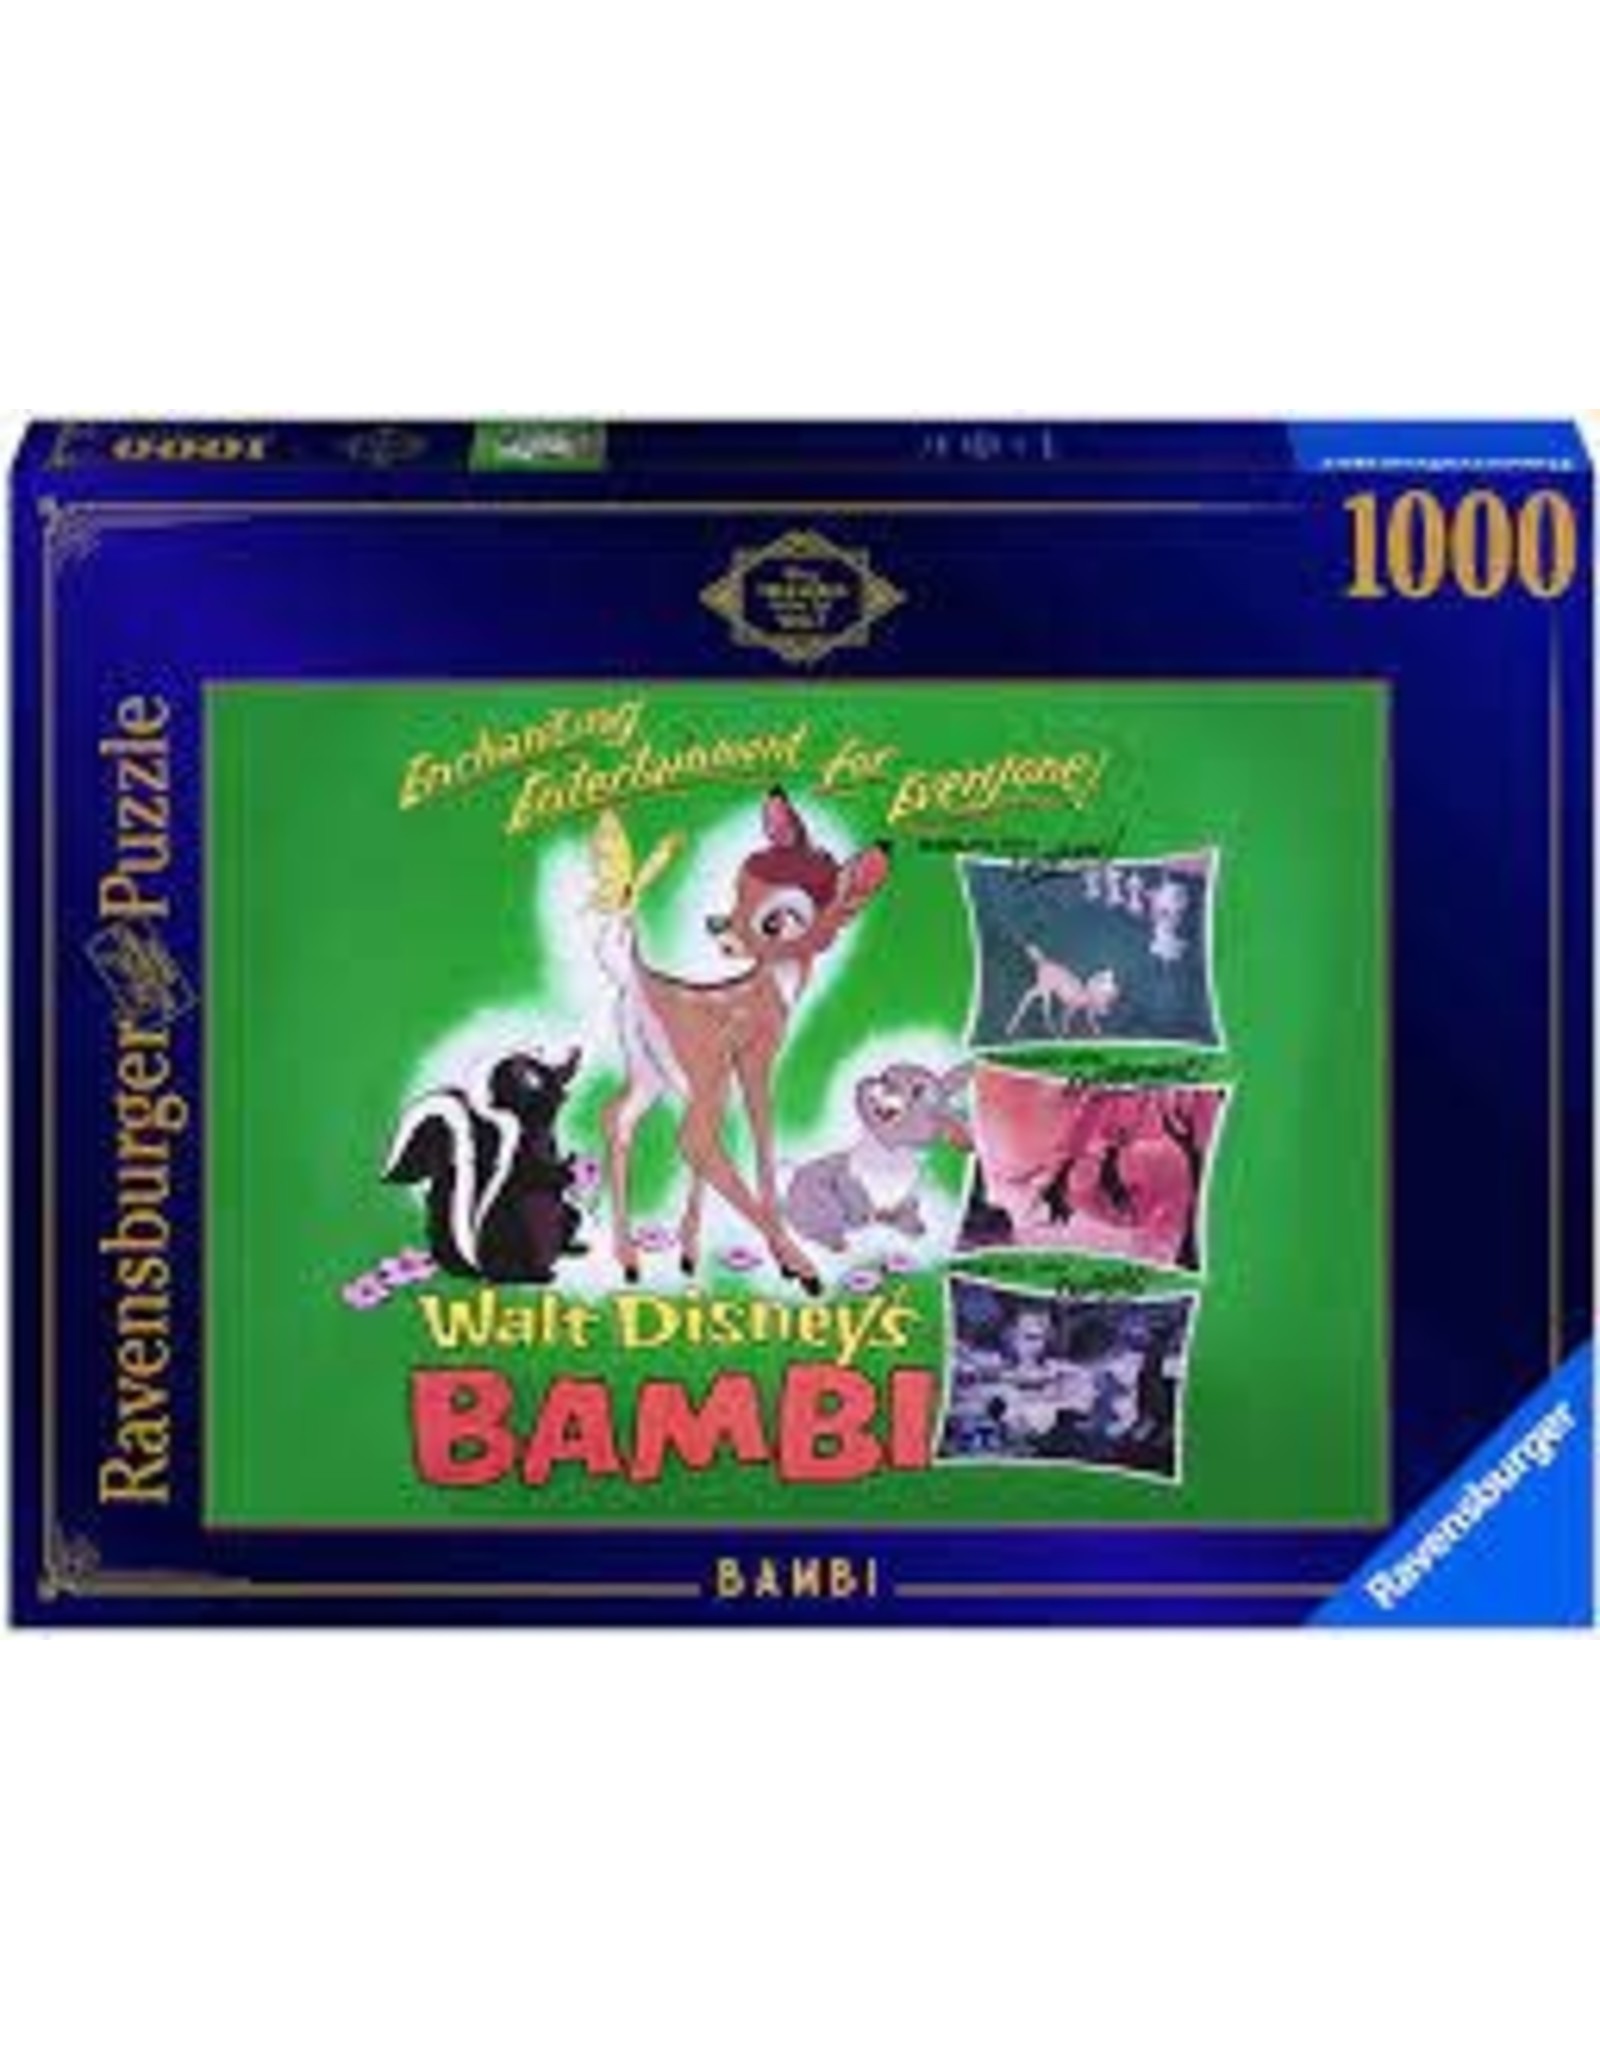 Disney Vault: Bambi 1000 pc